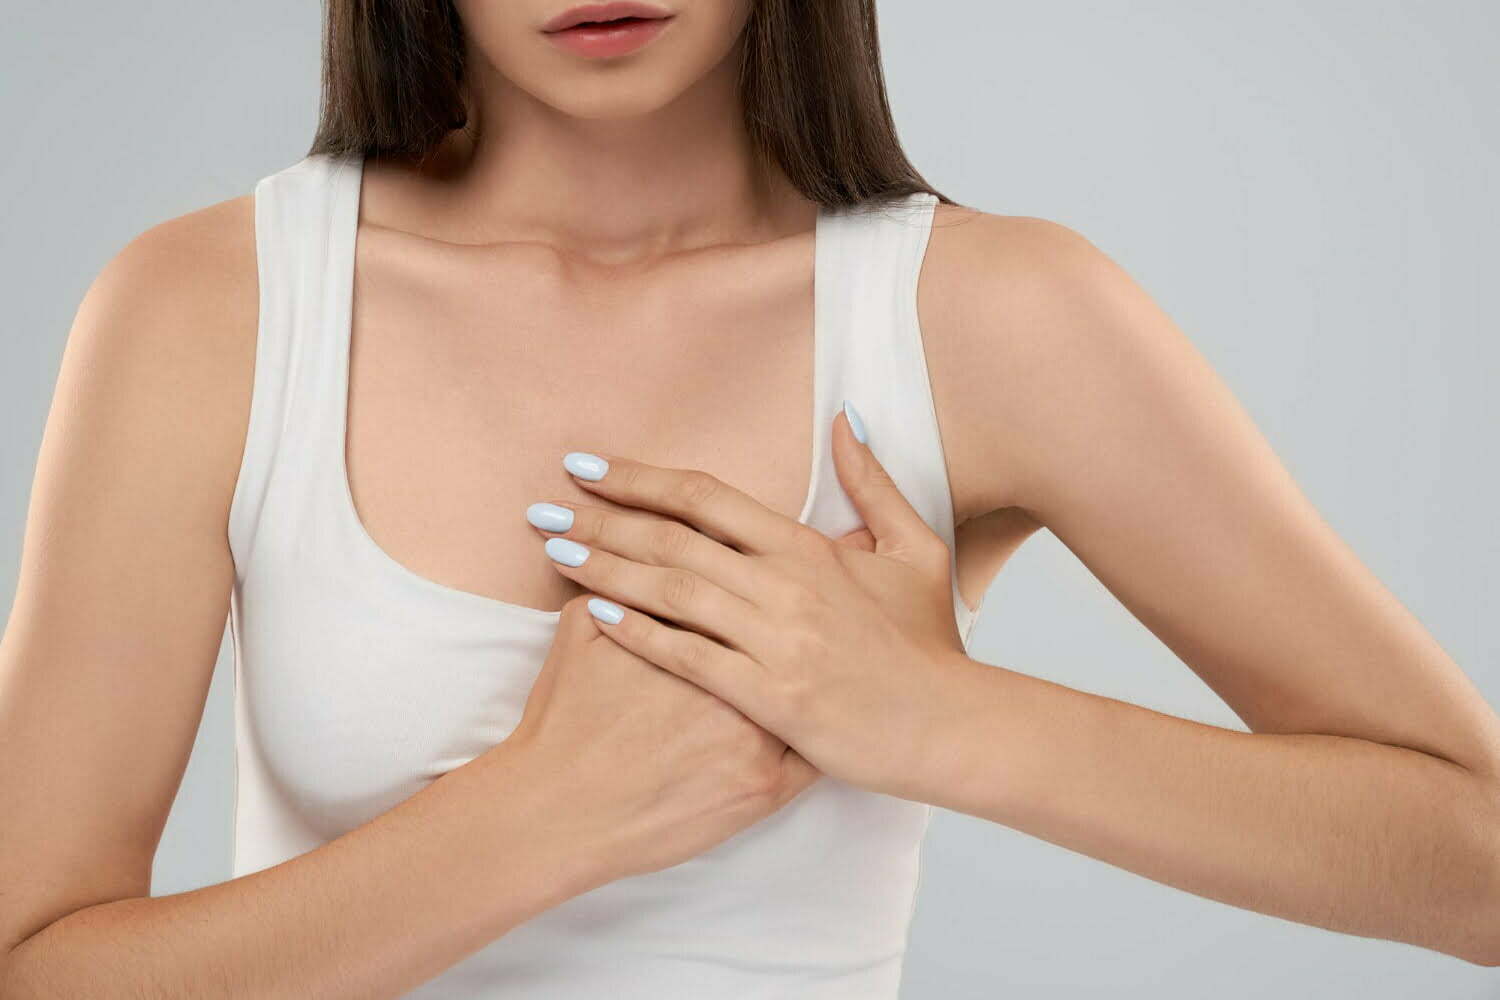 Galactorrea: secreciones irregulares en las mamas / alimentos ultraprocesados / picadas en el corazón / depresión